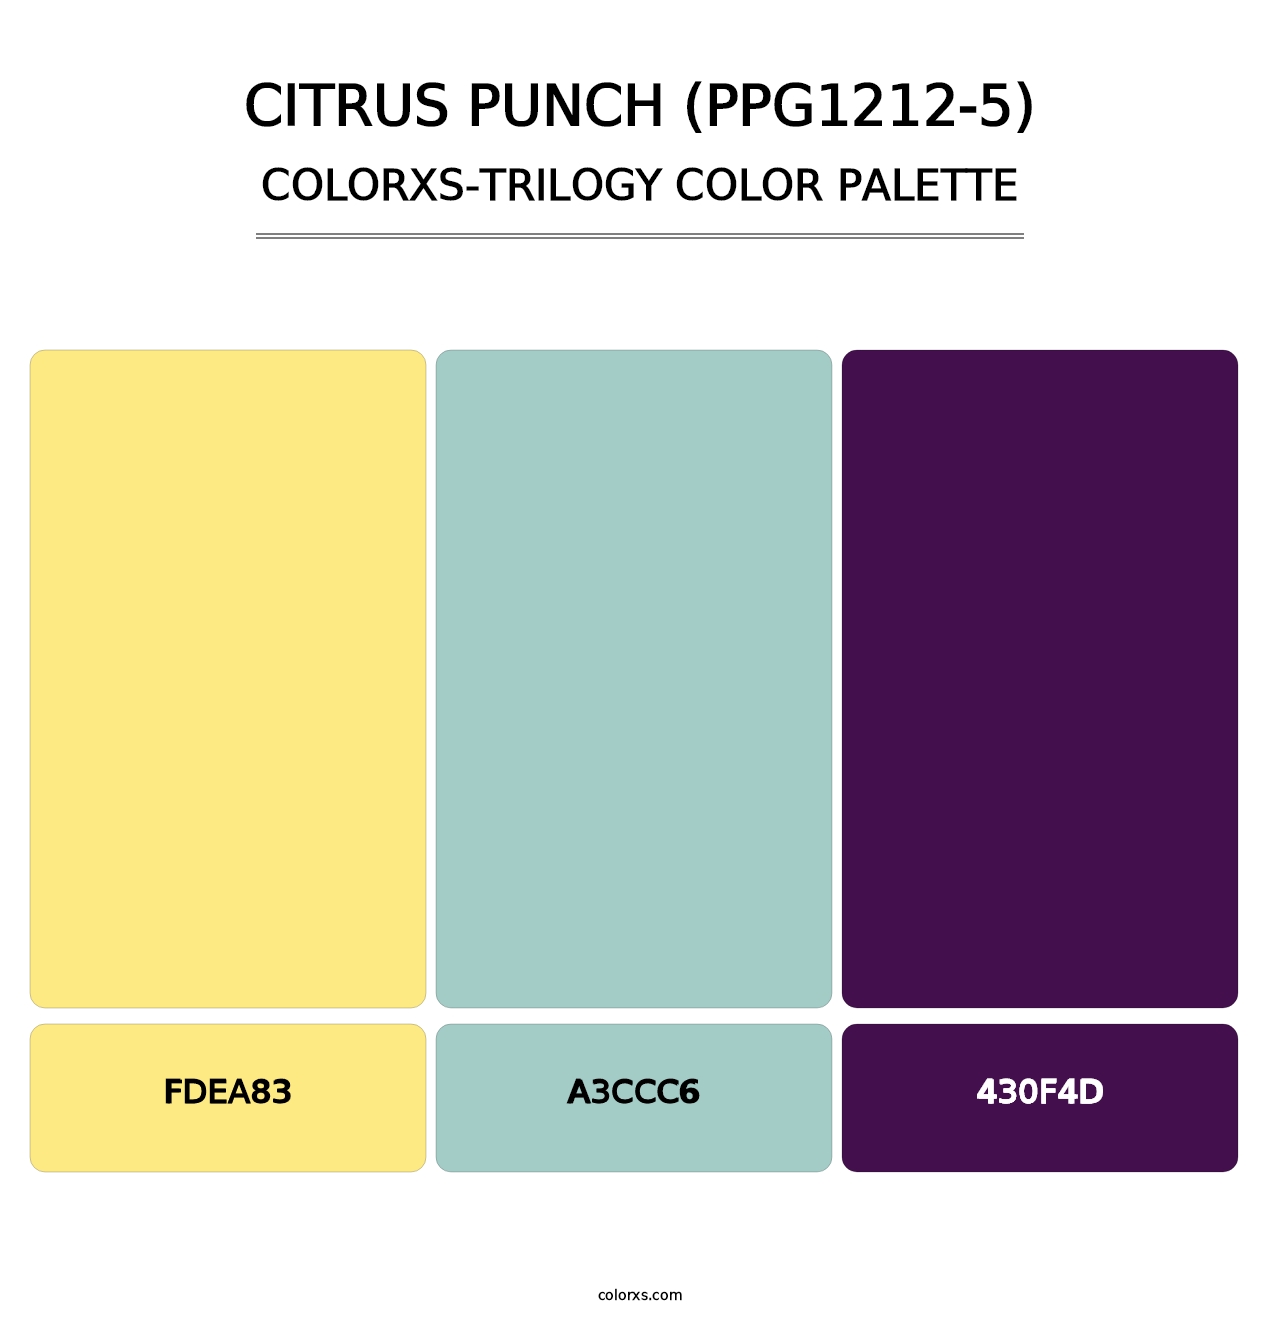 Citrus Punch (PPG1212-5) - Colorxs Trilogy Palette